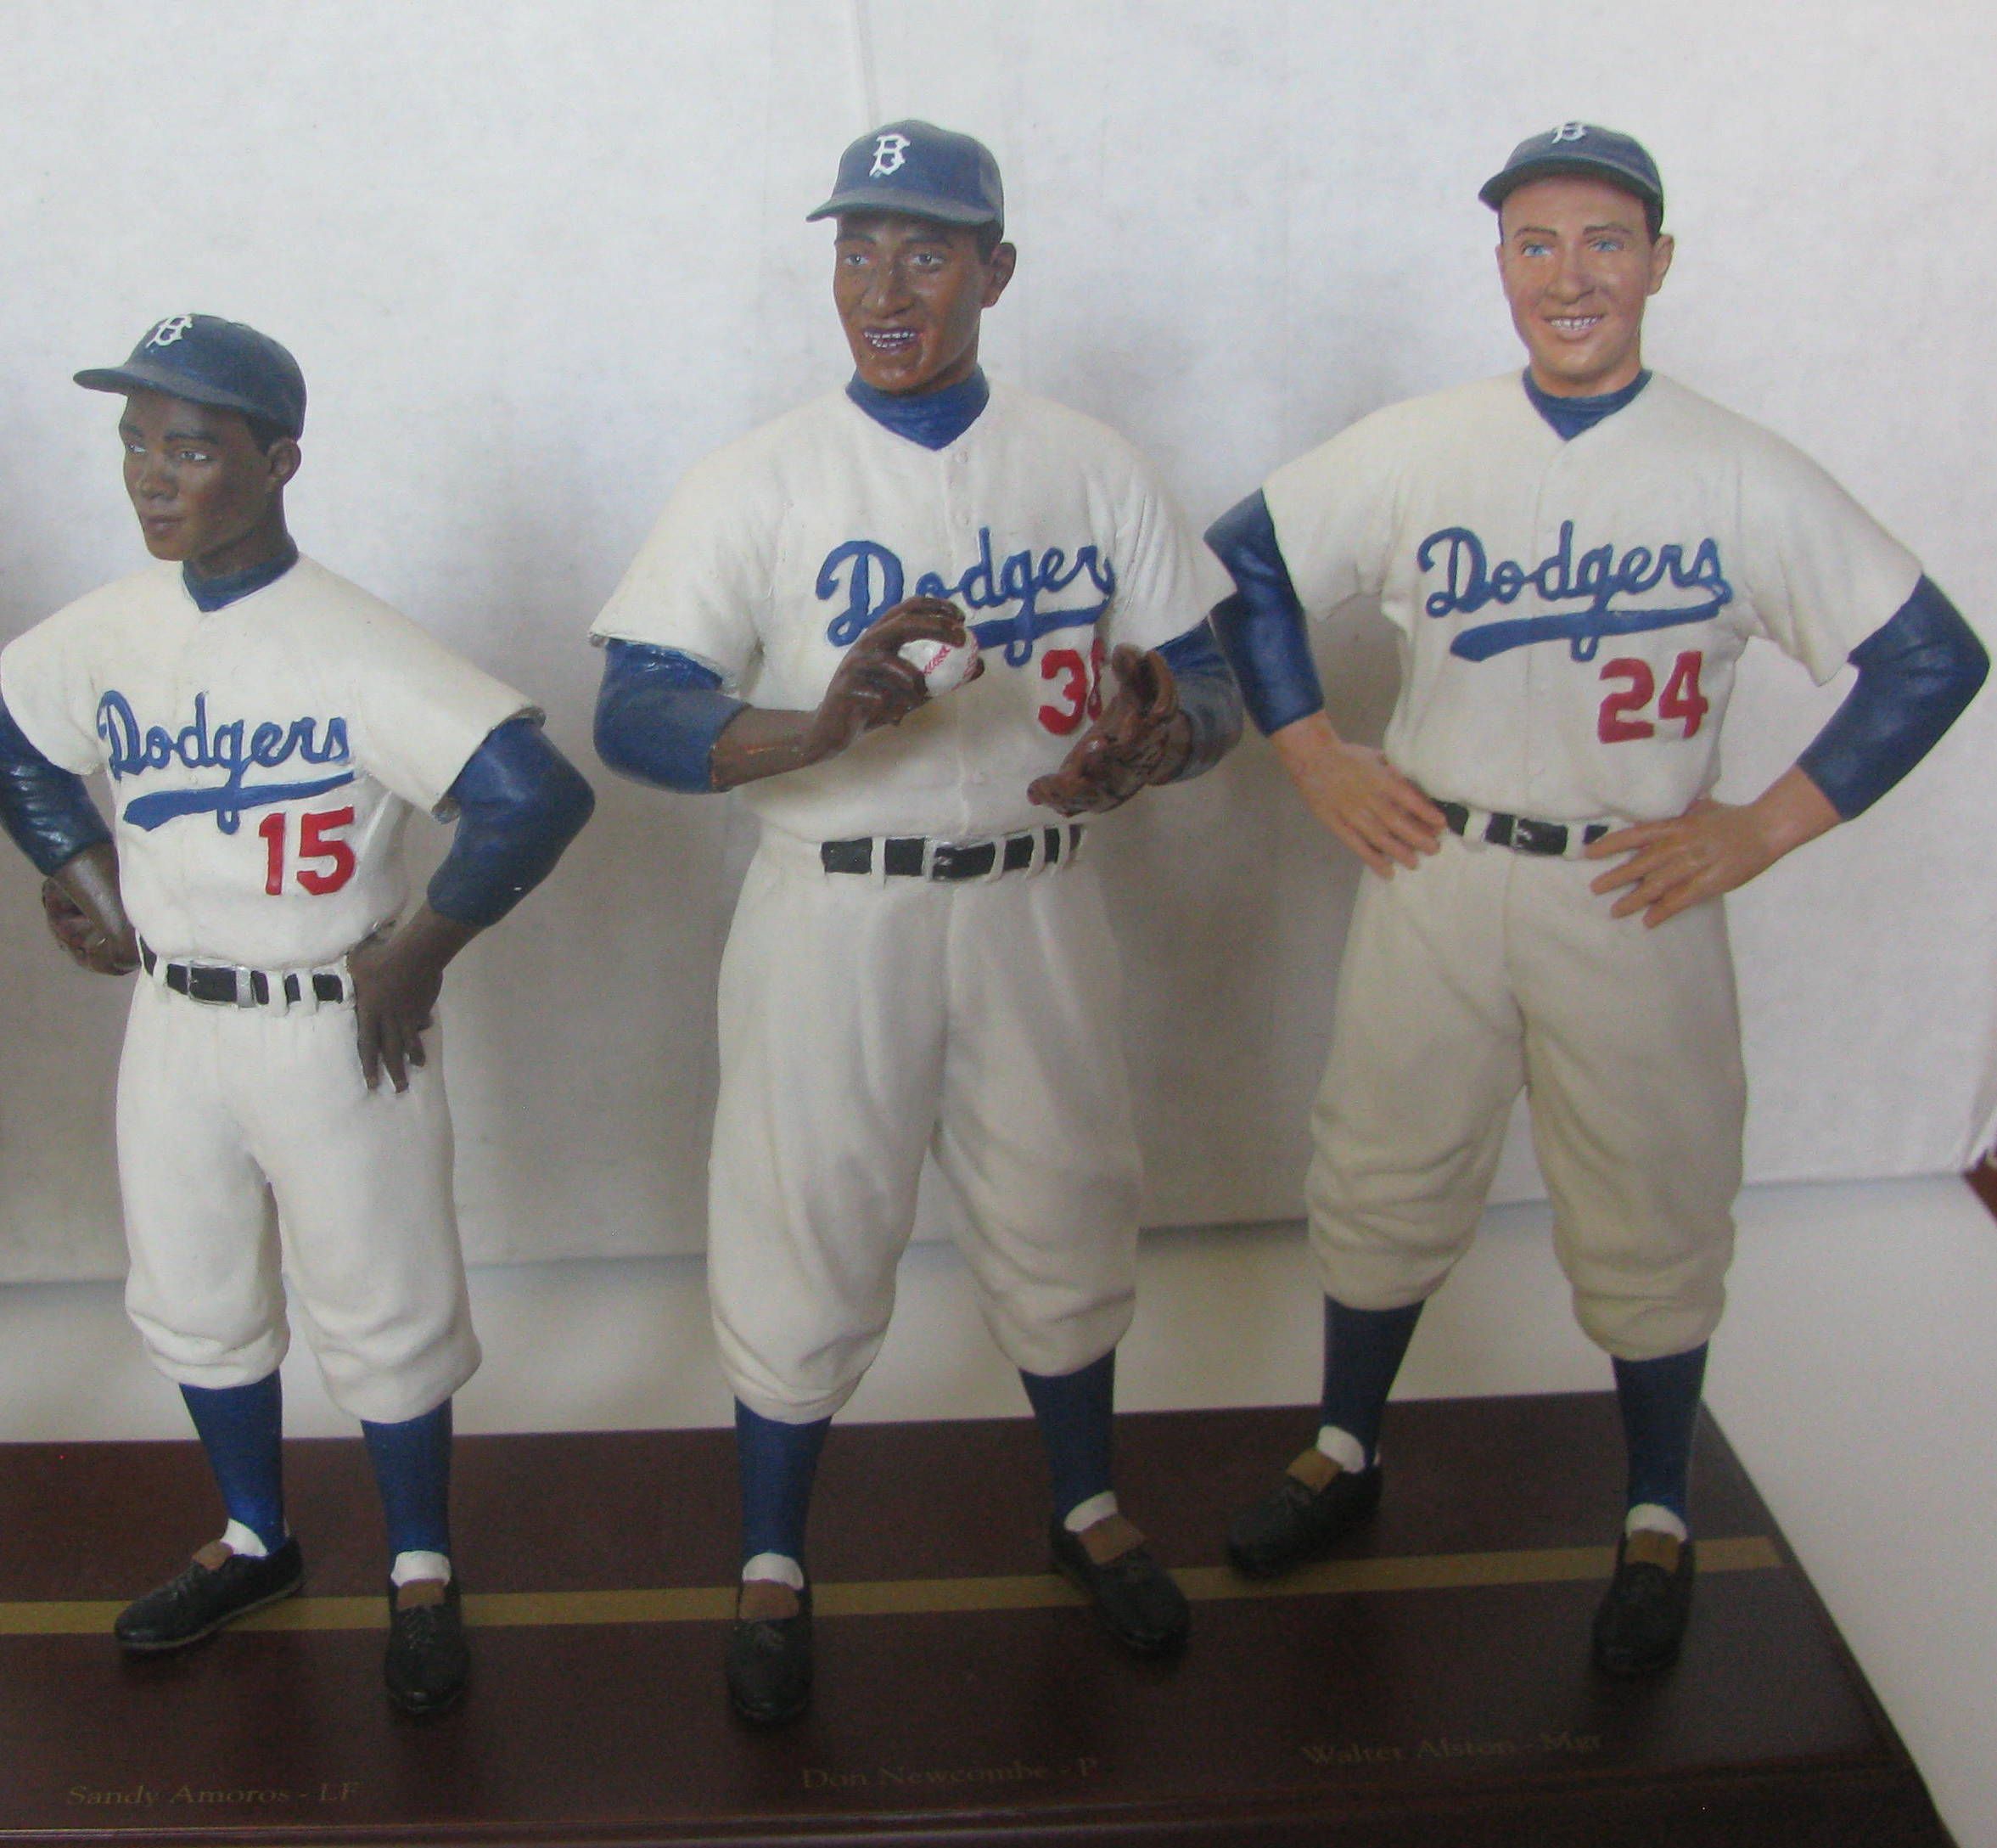 1955 dodgers uniforms